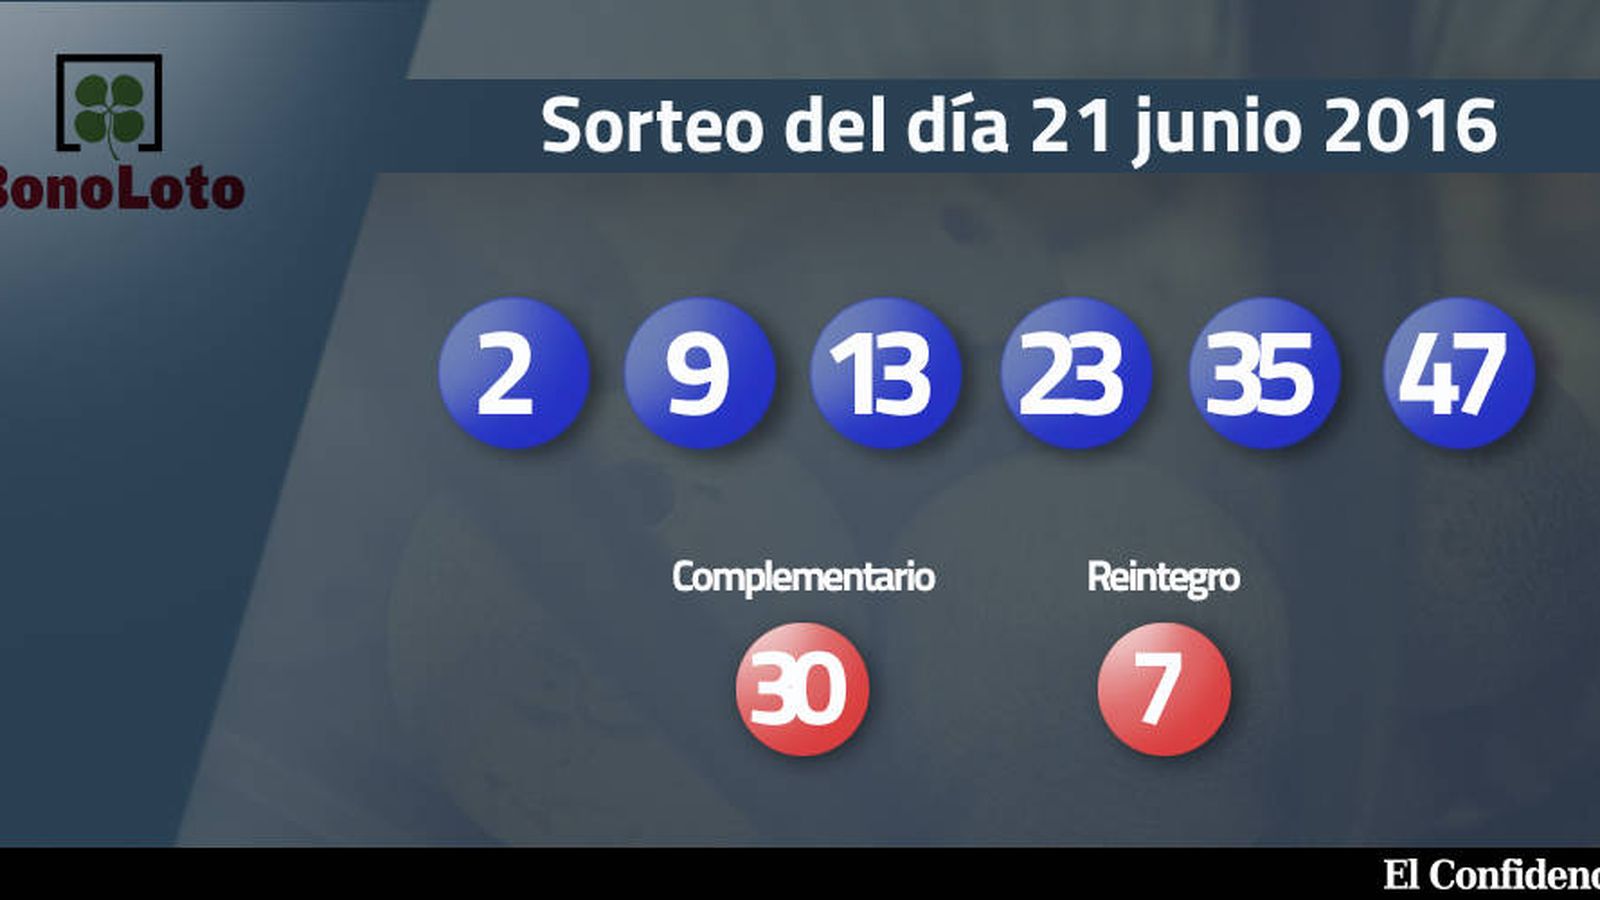 Foto: Resultados del sorteo de la Bonoloto del 21 de junio de 2016 (EC)